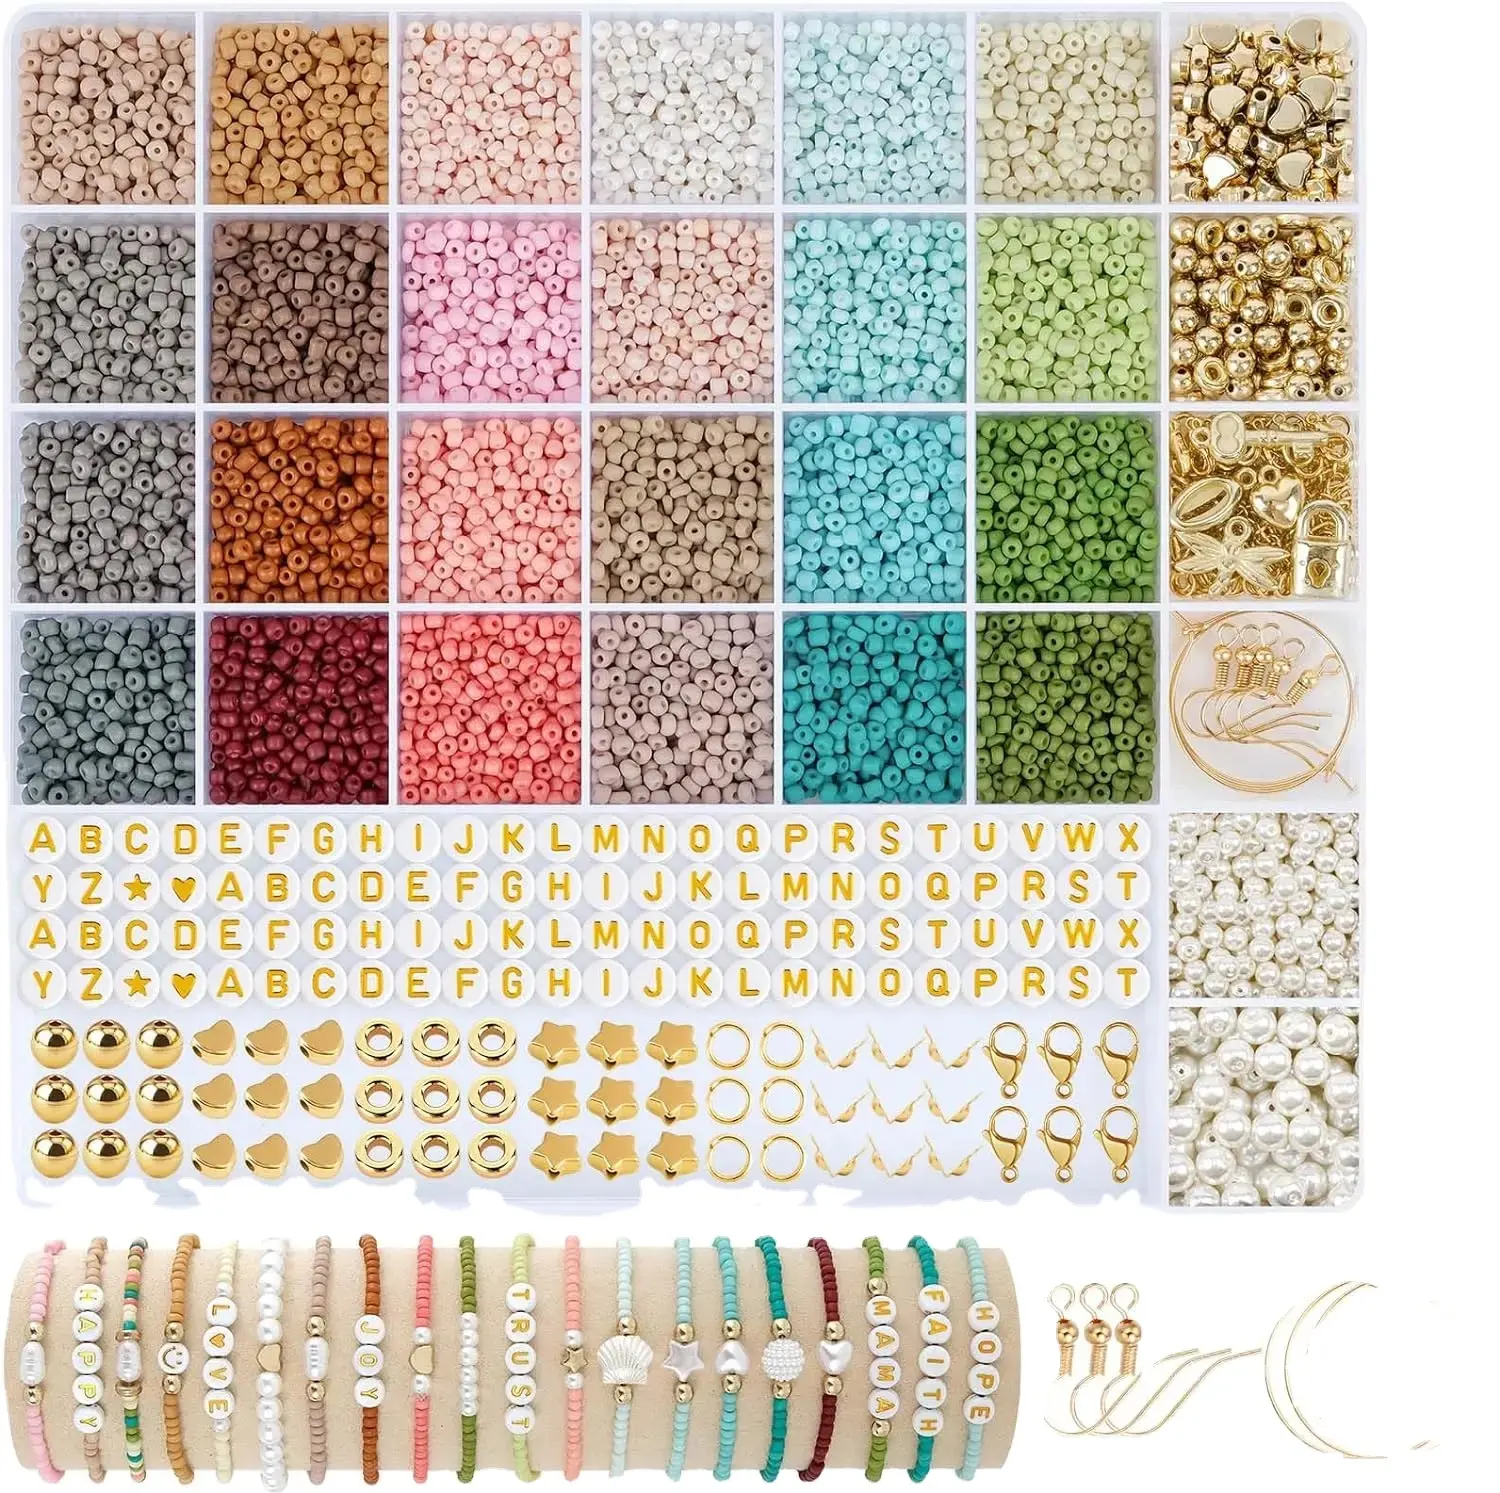 12000 pezzi 3 mm set di perle di vetro, perline per filettatura con perline con lettere colorate per bracciali idea regalo, natale, vacanze